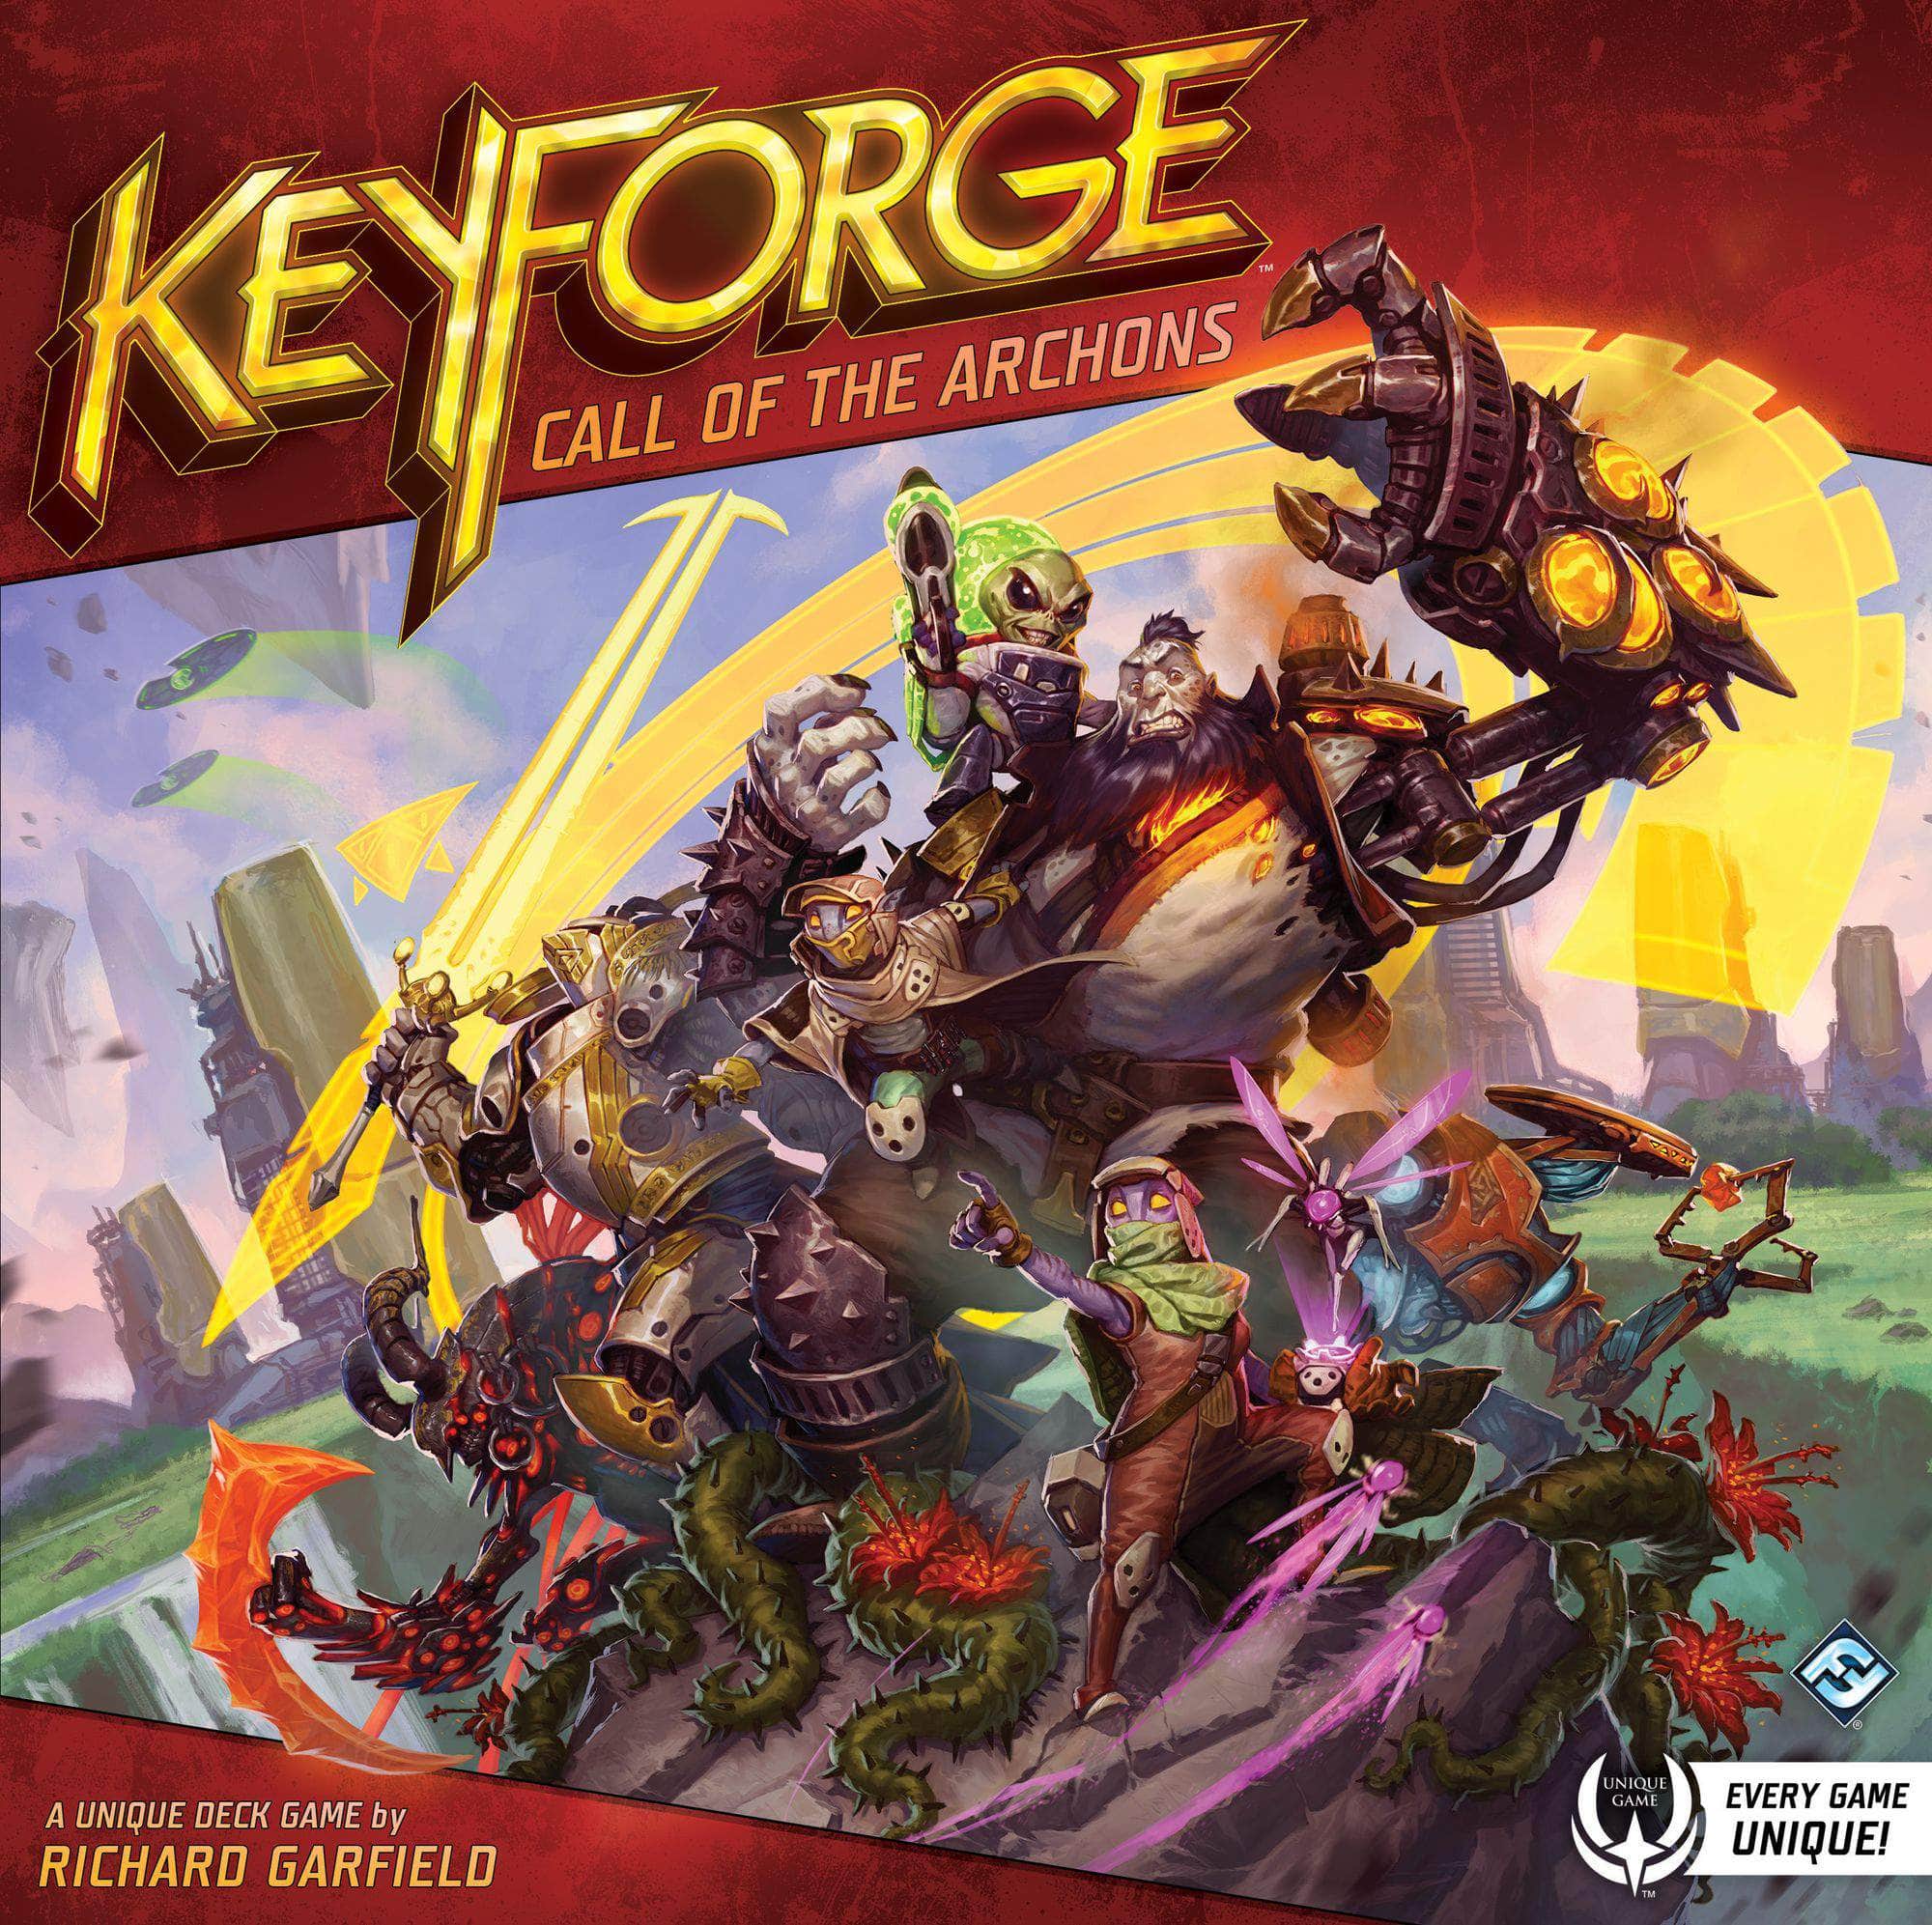 Keyforge: لعبة Call of The Archons للبيع بالتجزئة Asmodee, Asterion Press, Fantasy Flight Games KS800581A